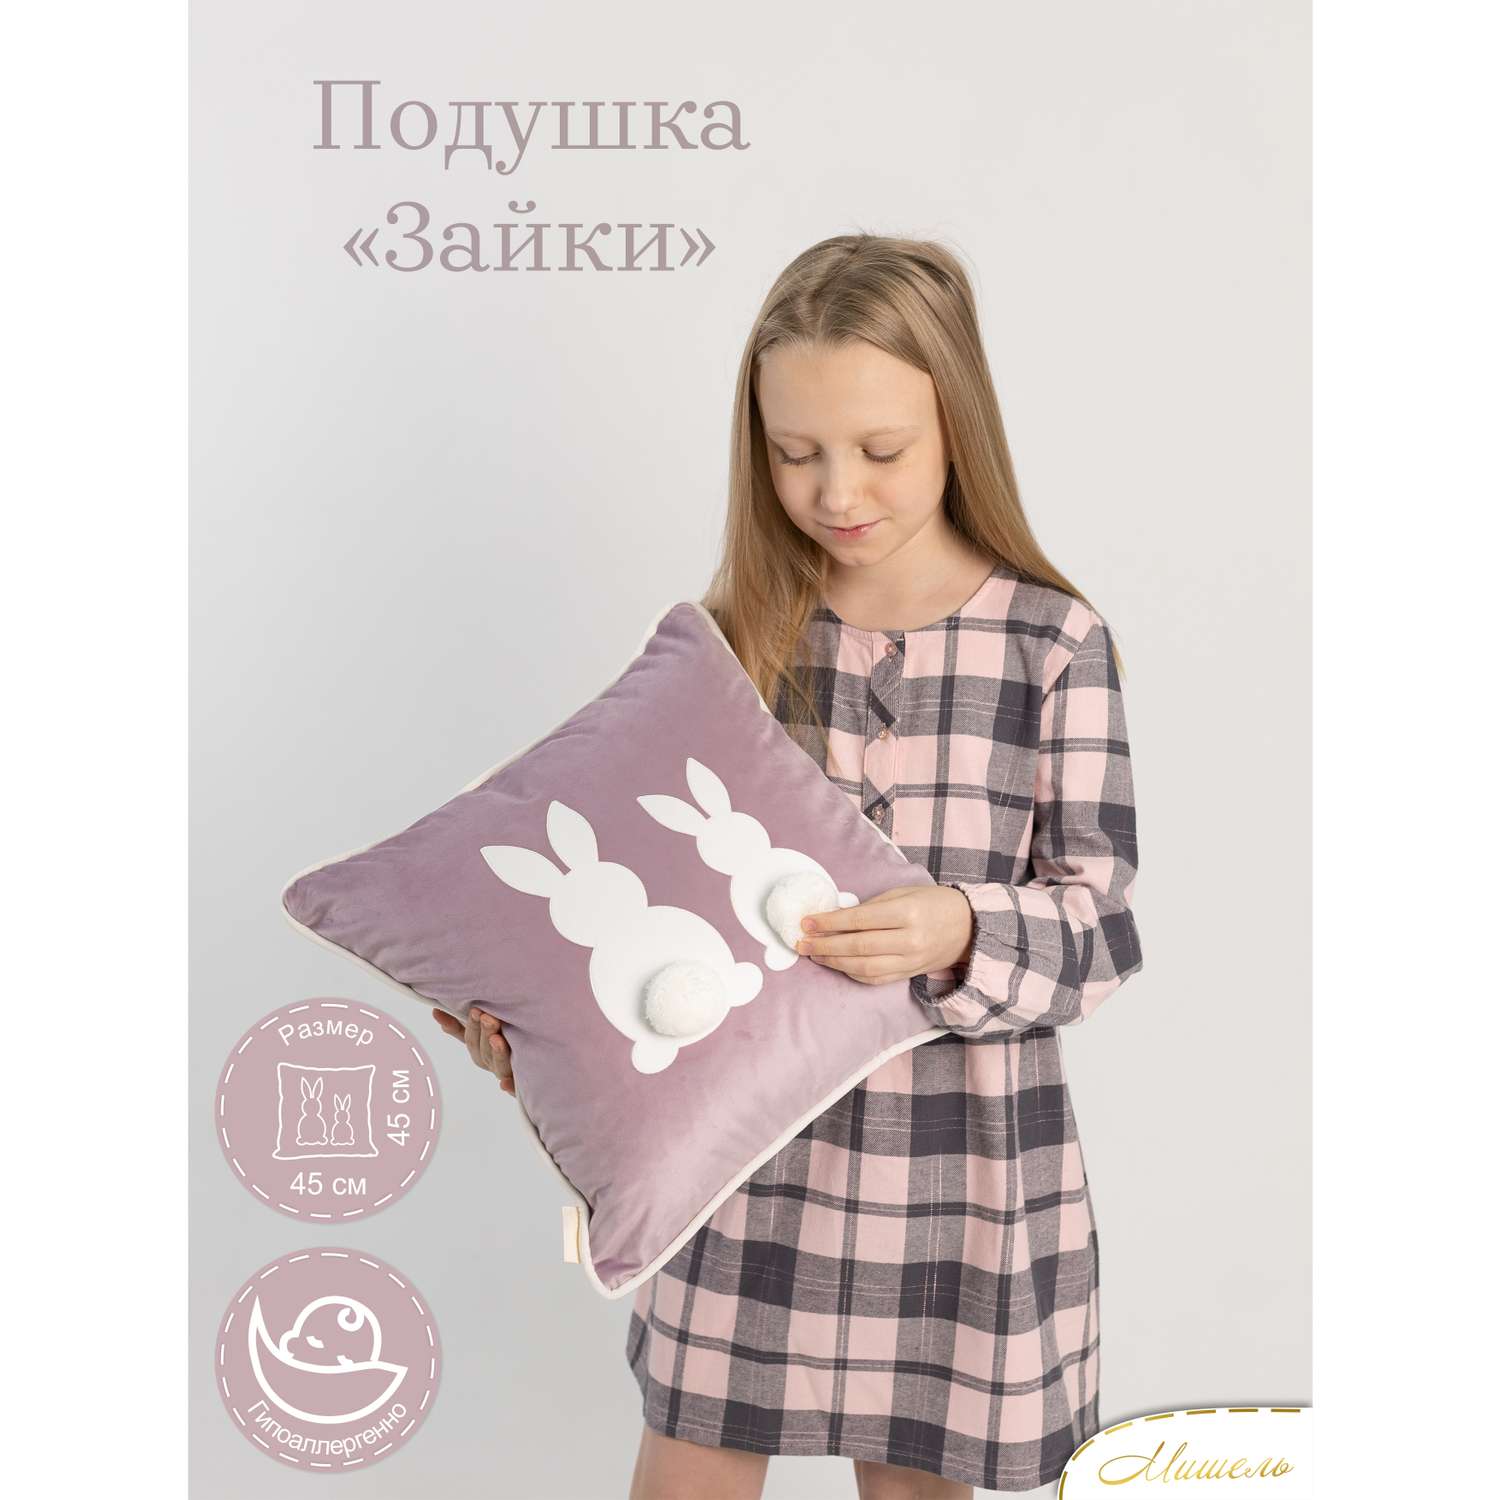 Подушка декоративная детская Мишель Зайки цвет сиреневый - фото 1